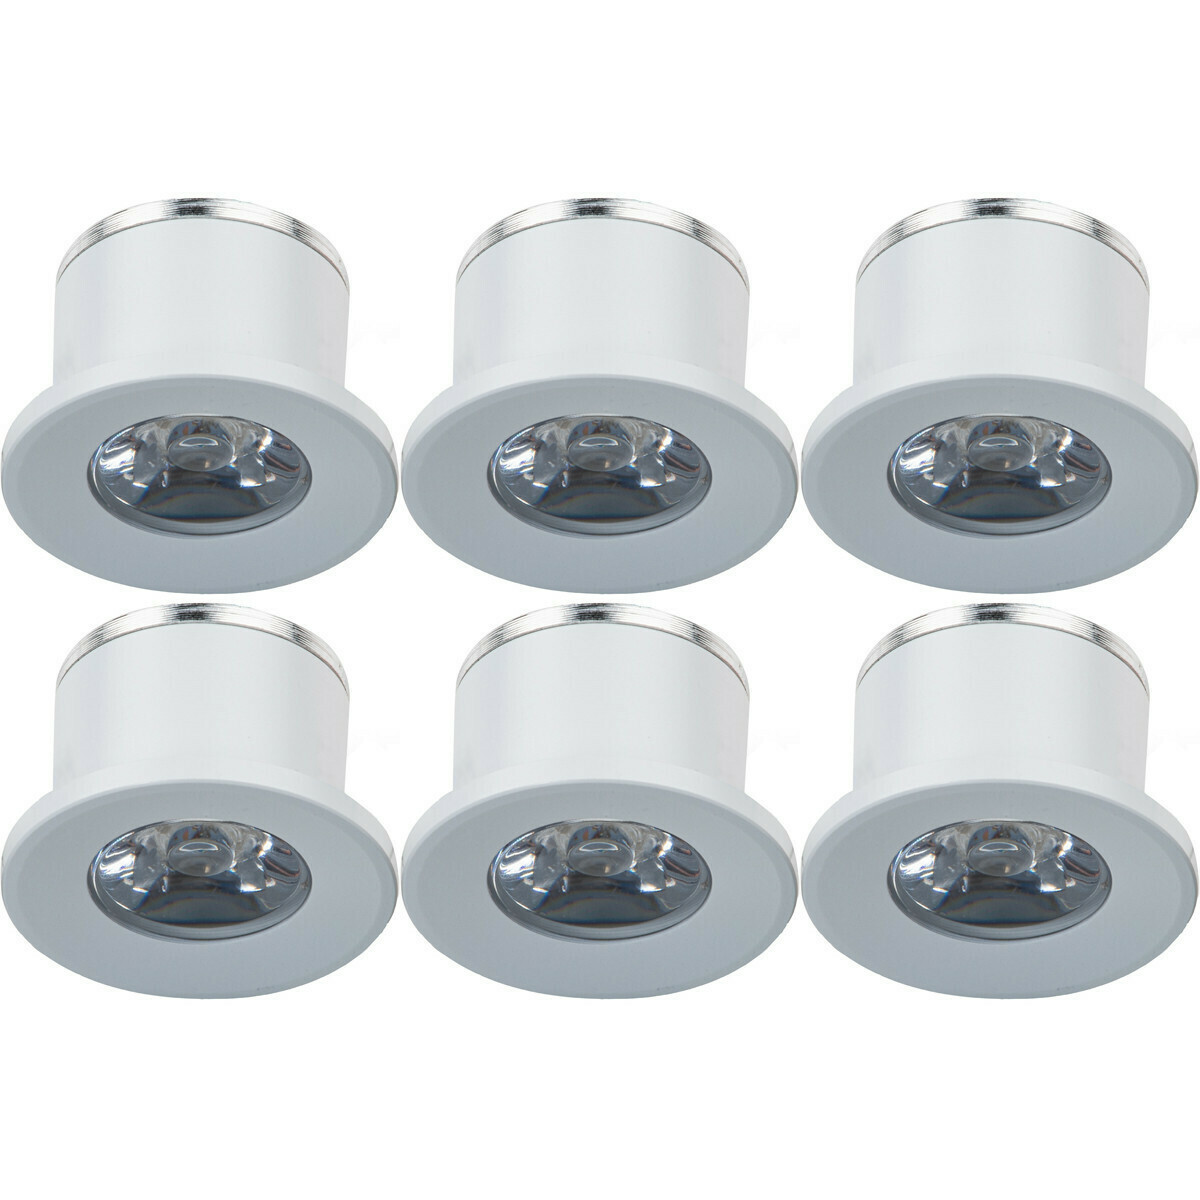 Voordeelpak LED Veranda Spot Verlichting 6 Pack - 1W - Warm Wit 3000K - Inbouw Dimbaar - Rond - Mat Wit - Aluminium - Ø31mm | BES LED